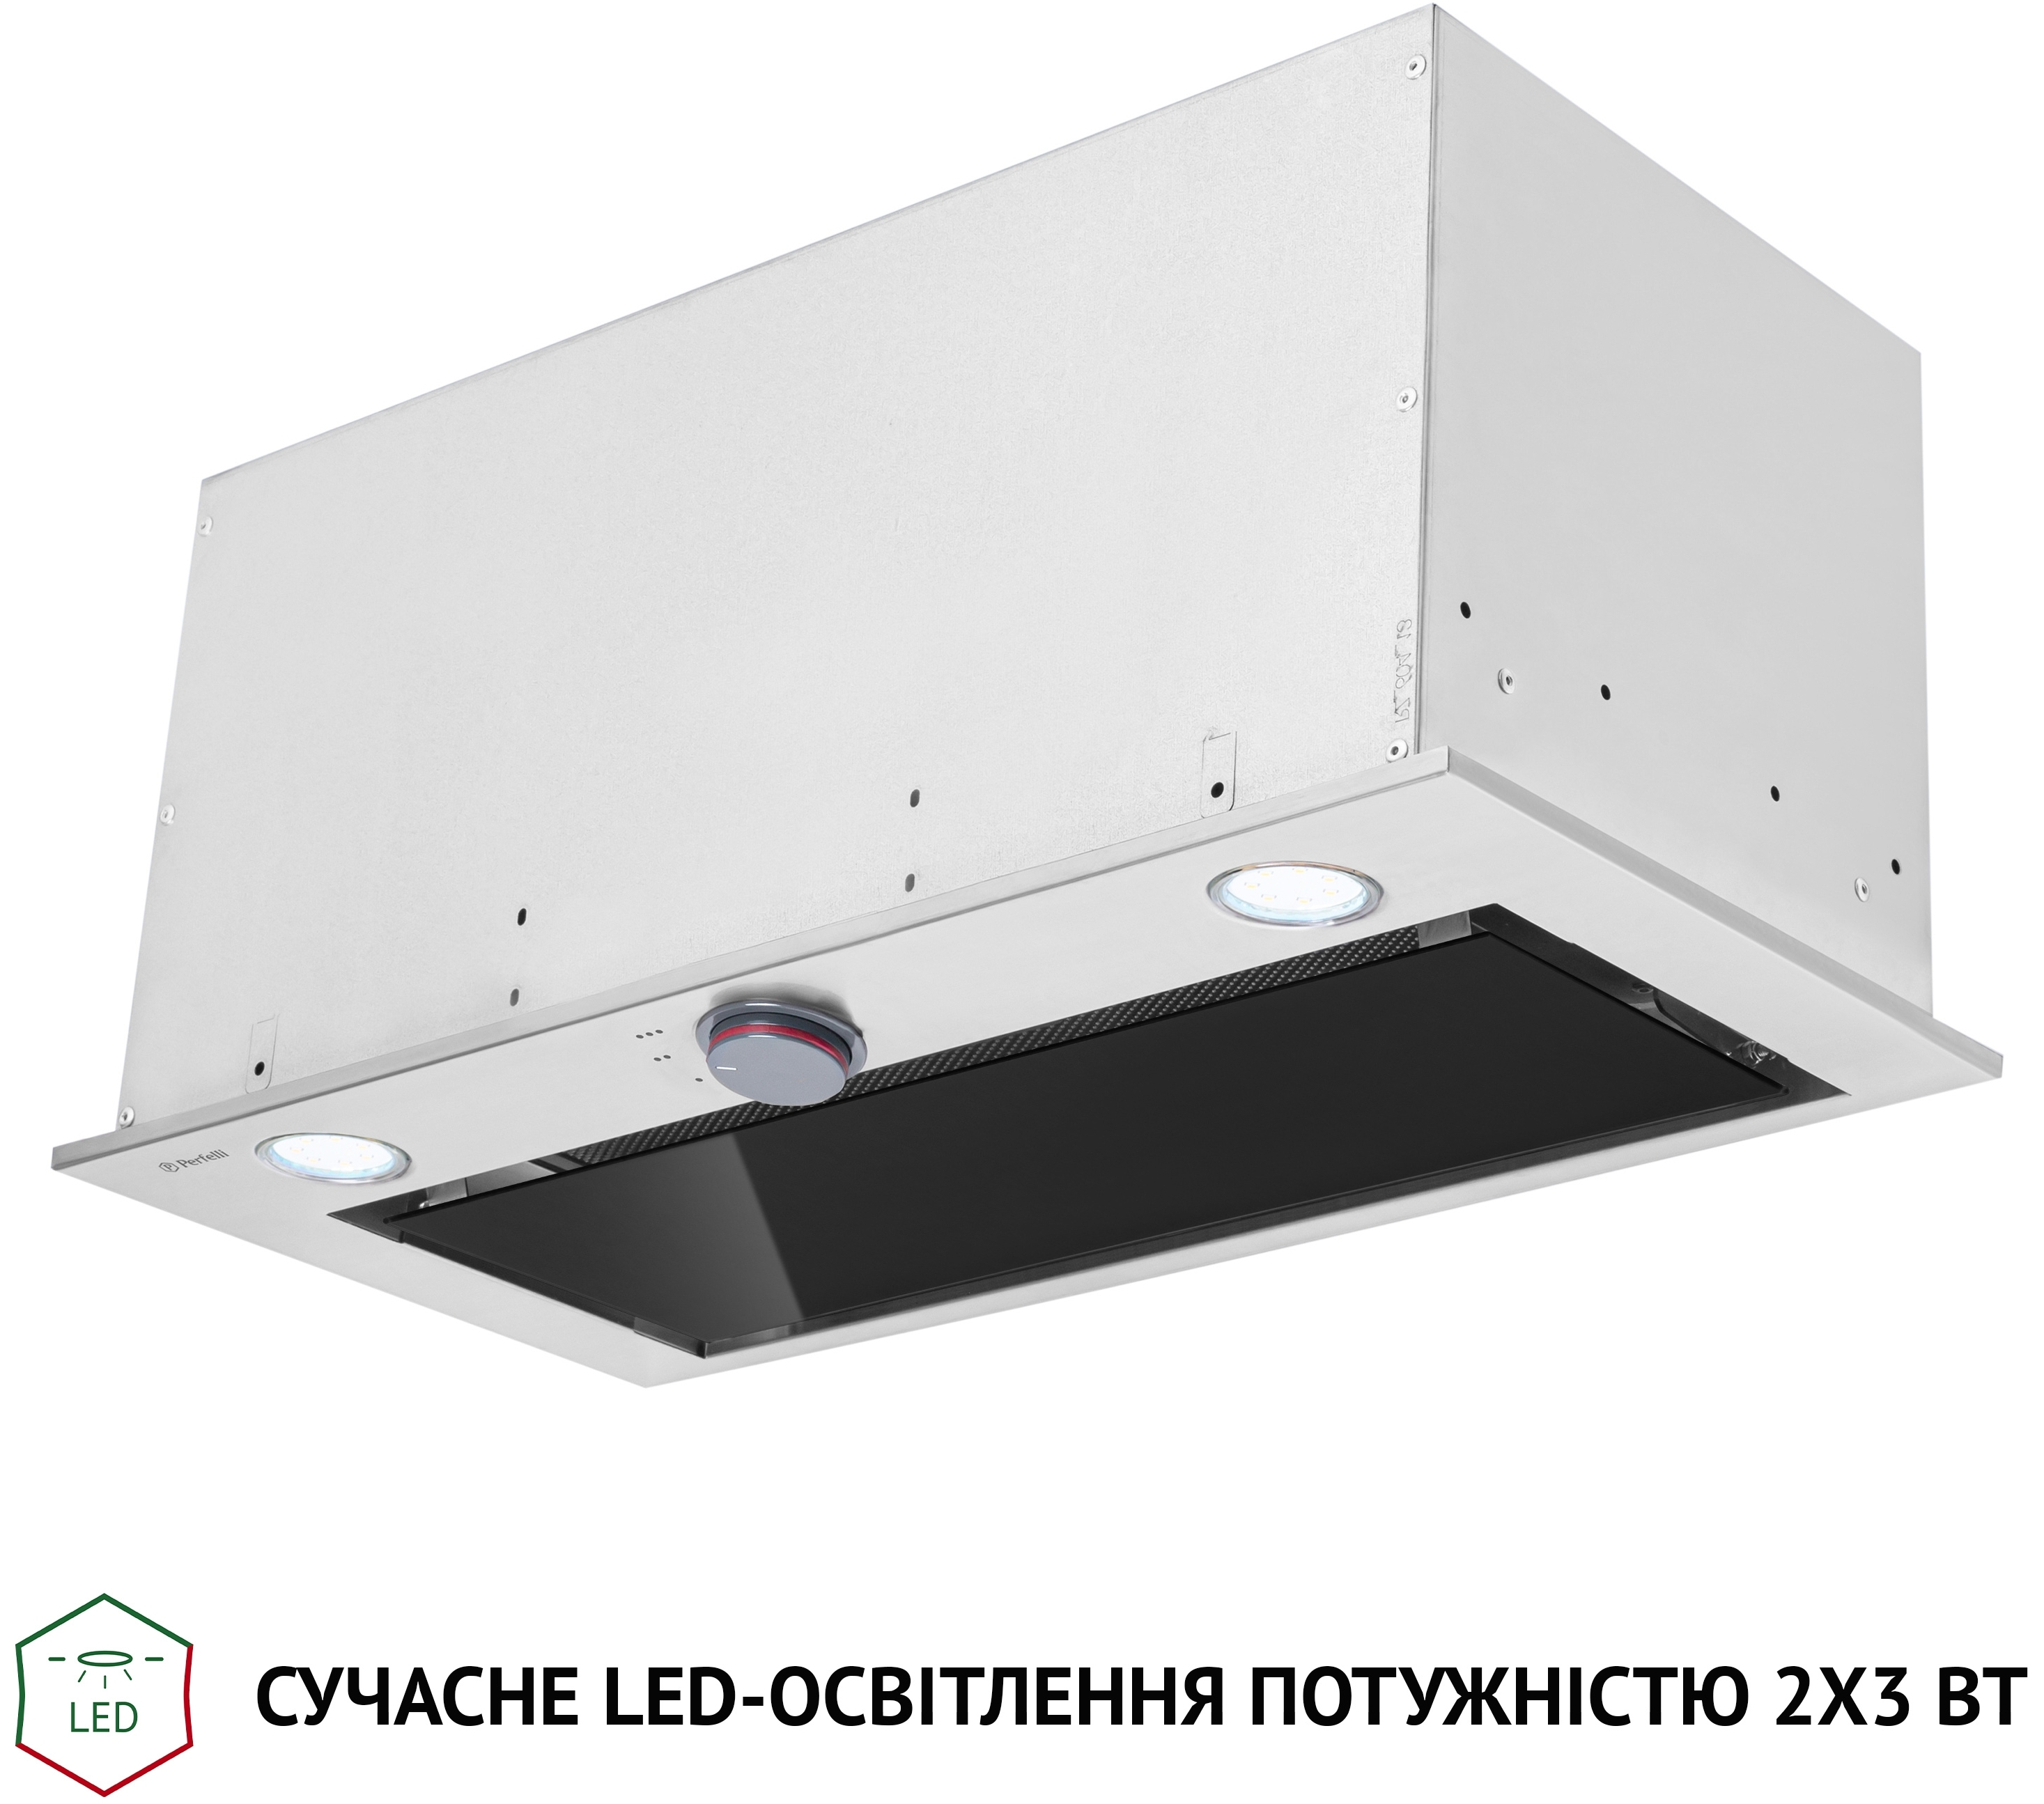 Кухонная вытяжка Perfelli BI 6872 I LED отзывы - изображения 5